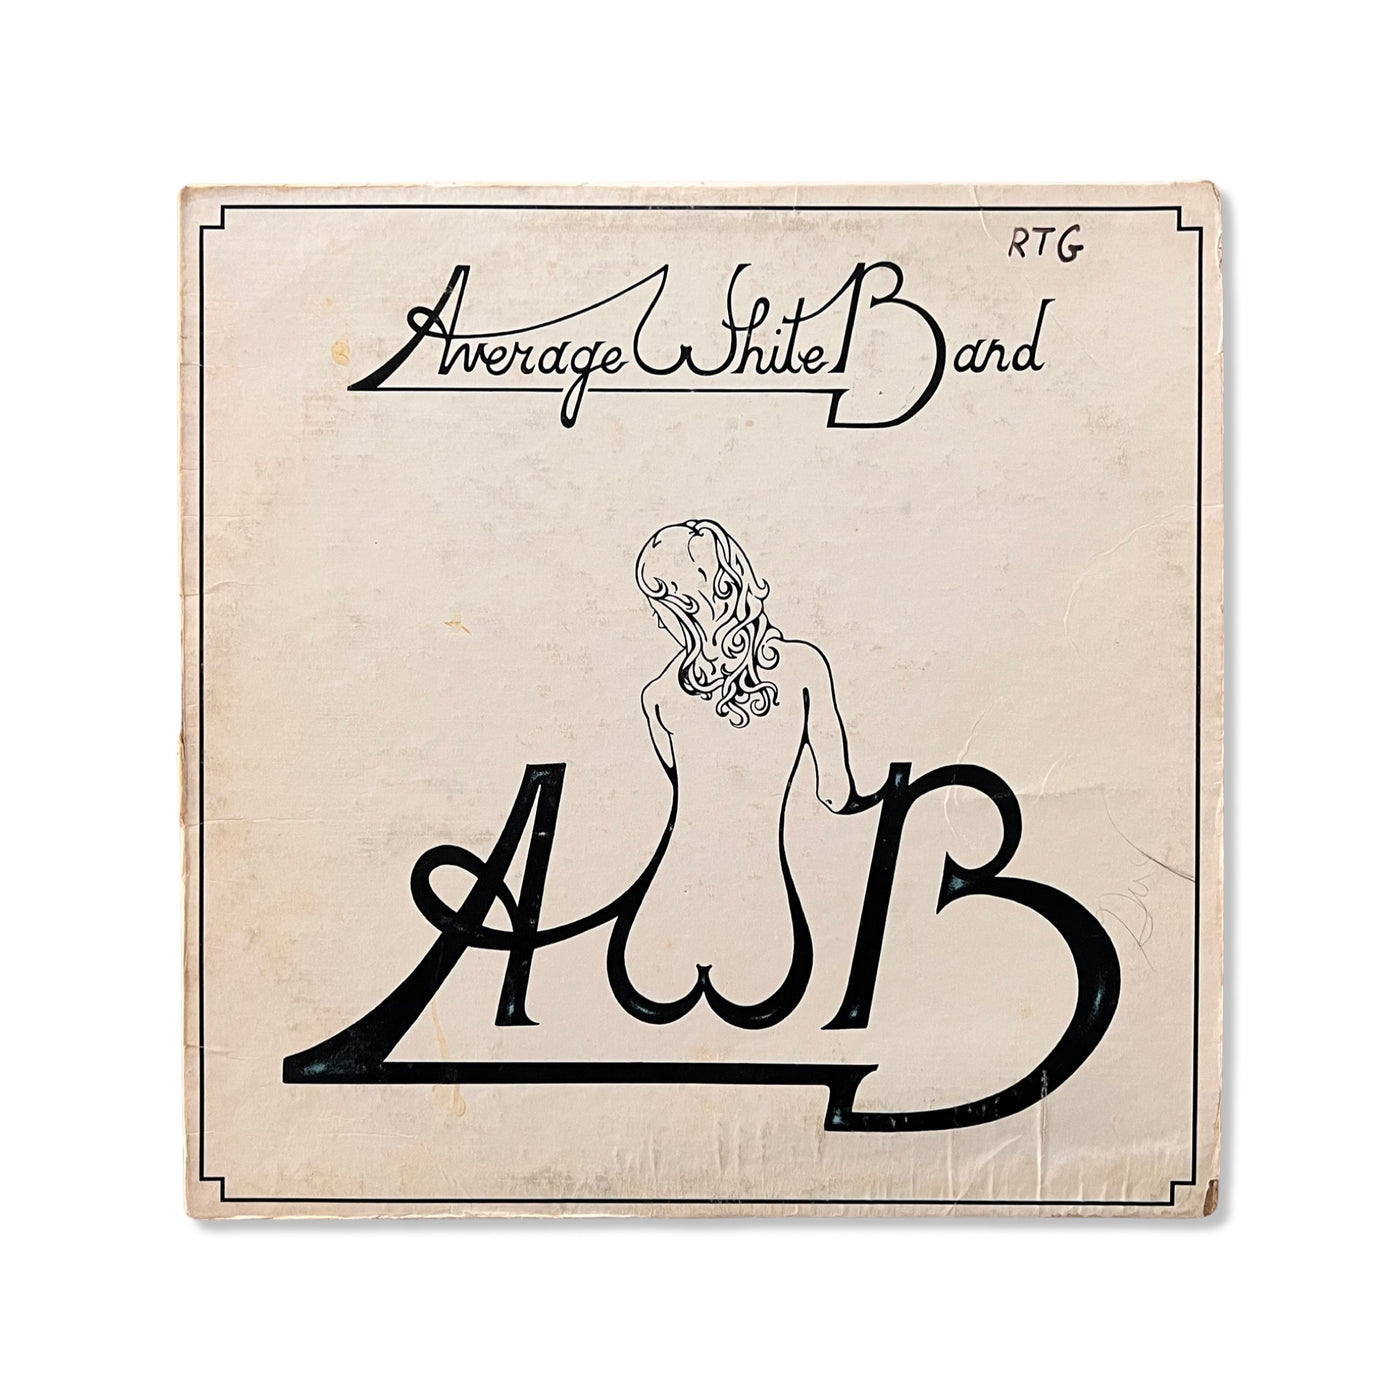 Average White Band – AWB